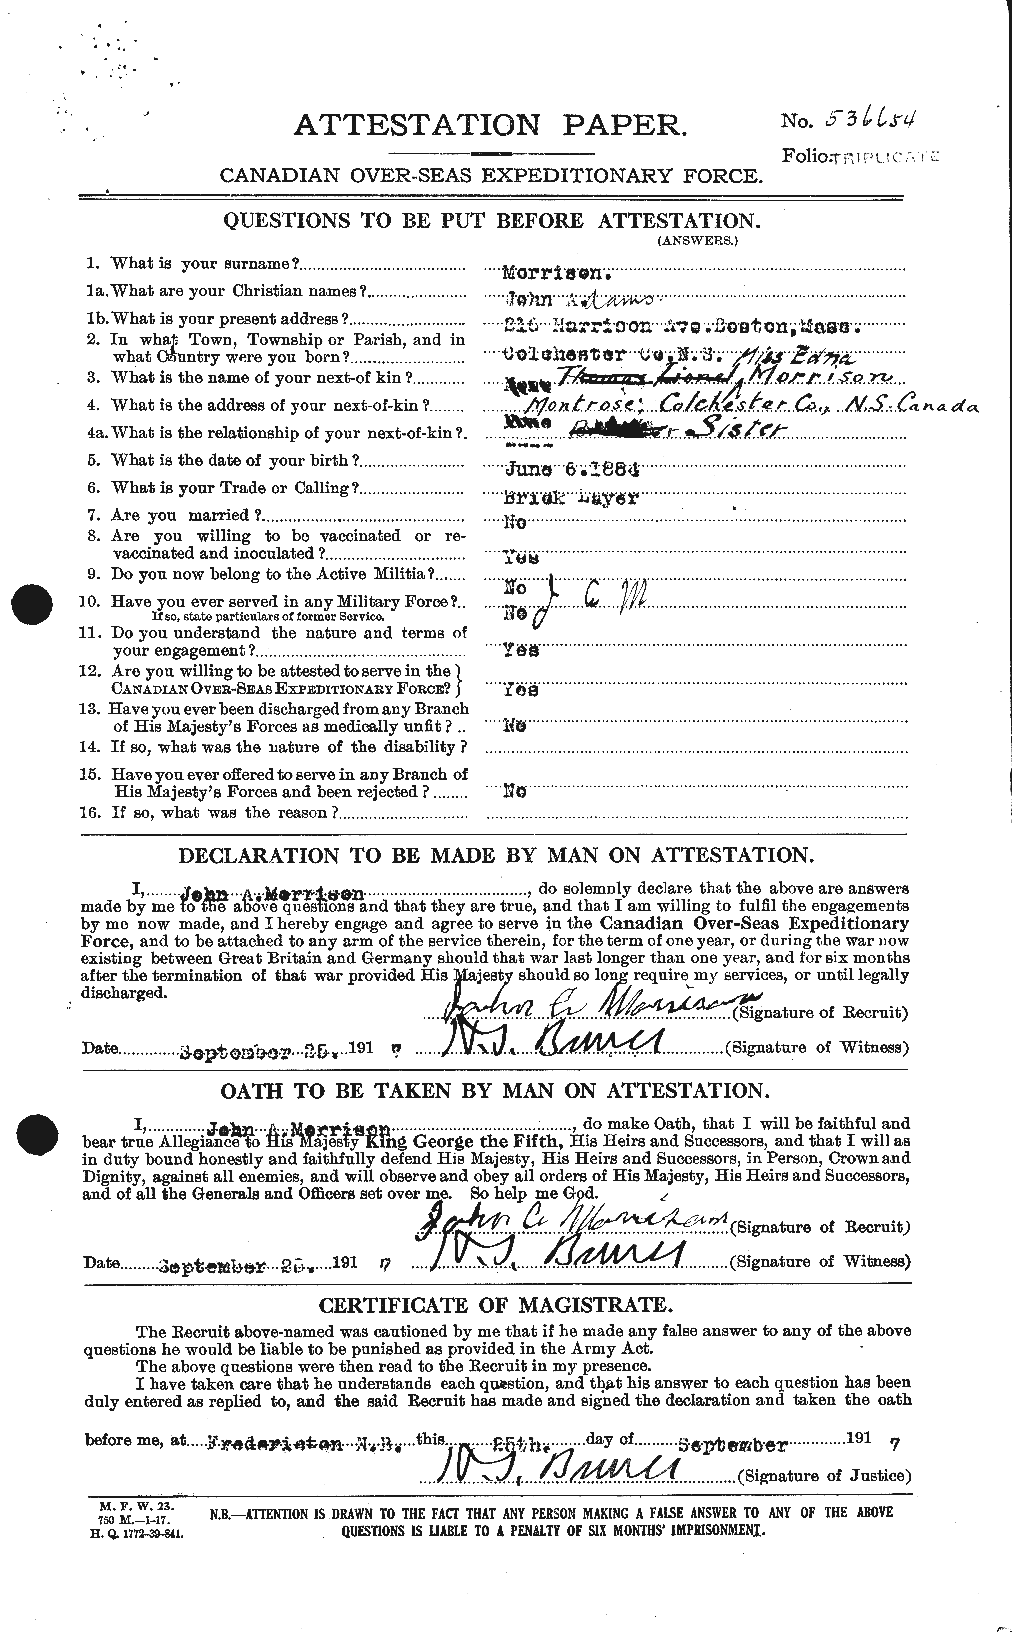 Dossiers du Personnel de la Première Guerre mondiale - CEC 507007a